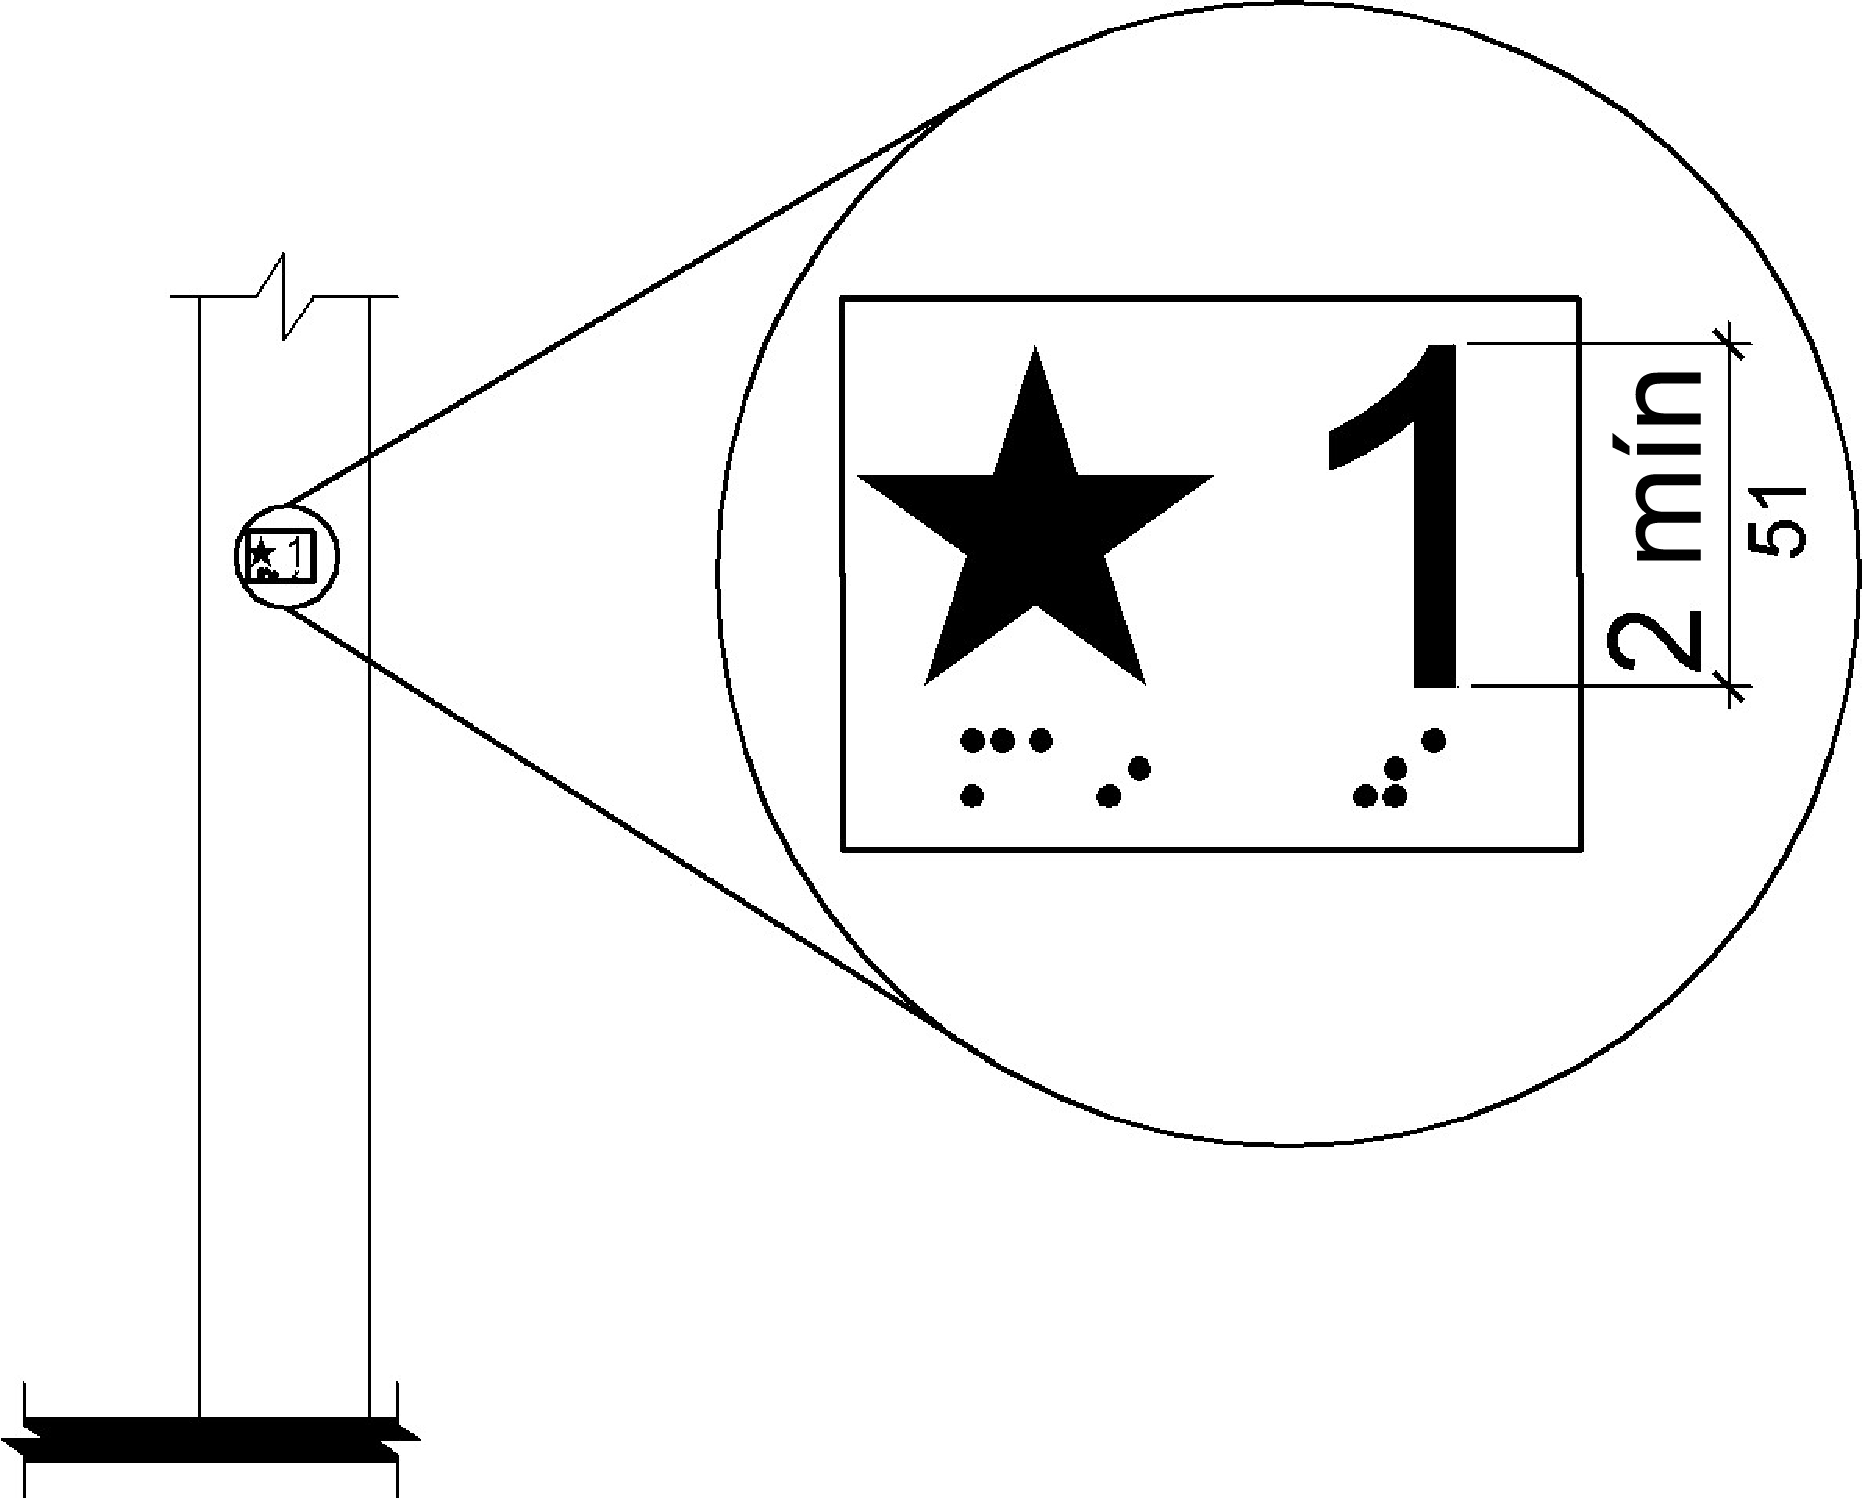 Se muestra un detalle ampliado de una designación de piso táctil.  El signo contiene una estrella y el número A1" al lado, que tiene 2 pulgadas (51 mm) de alto; el equivalente en braille se proporciona debajo de cada uno